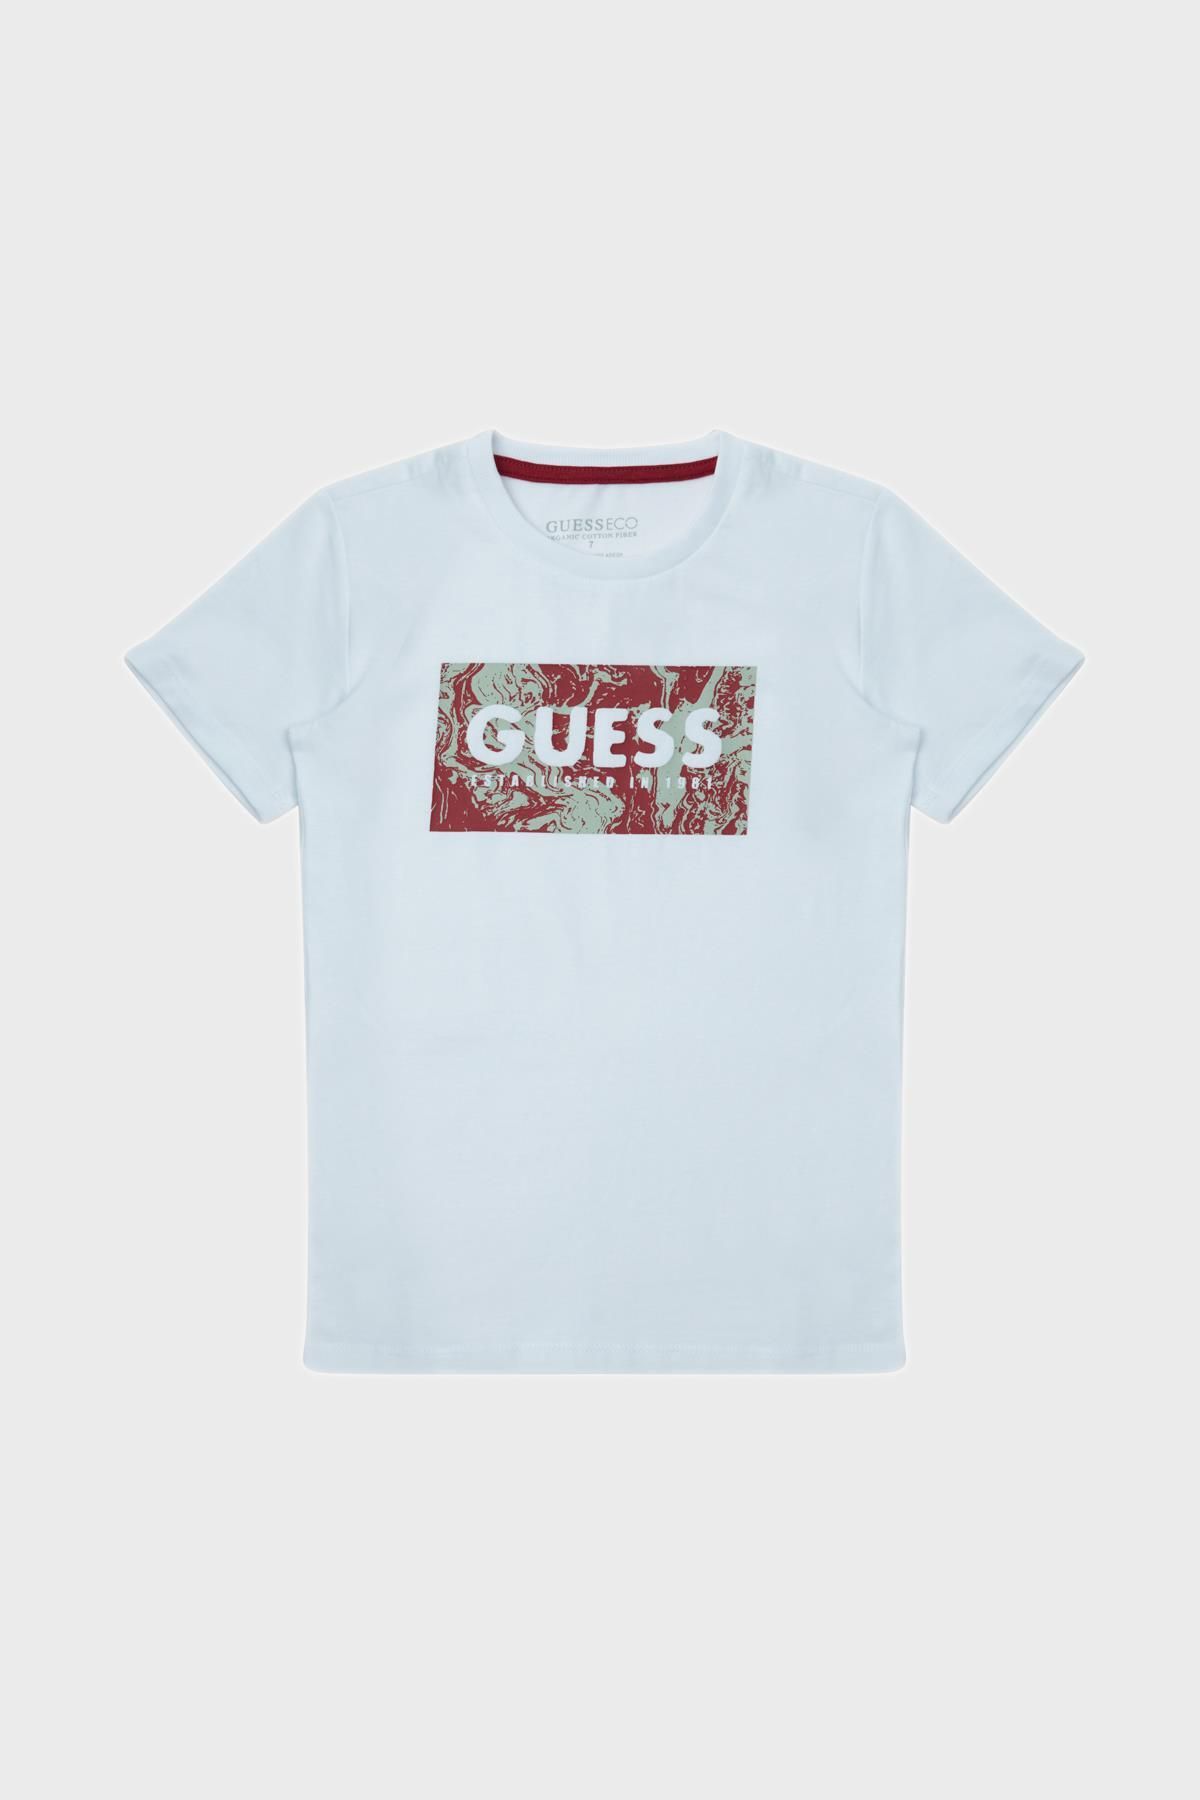 Guess Bg Store Erkek Çocuk T-shirt 23ss0glgı08